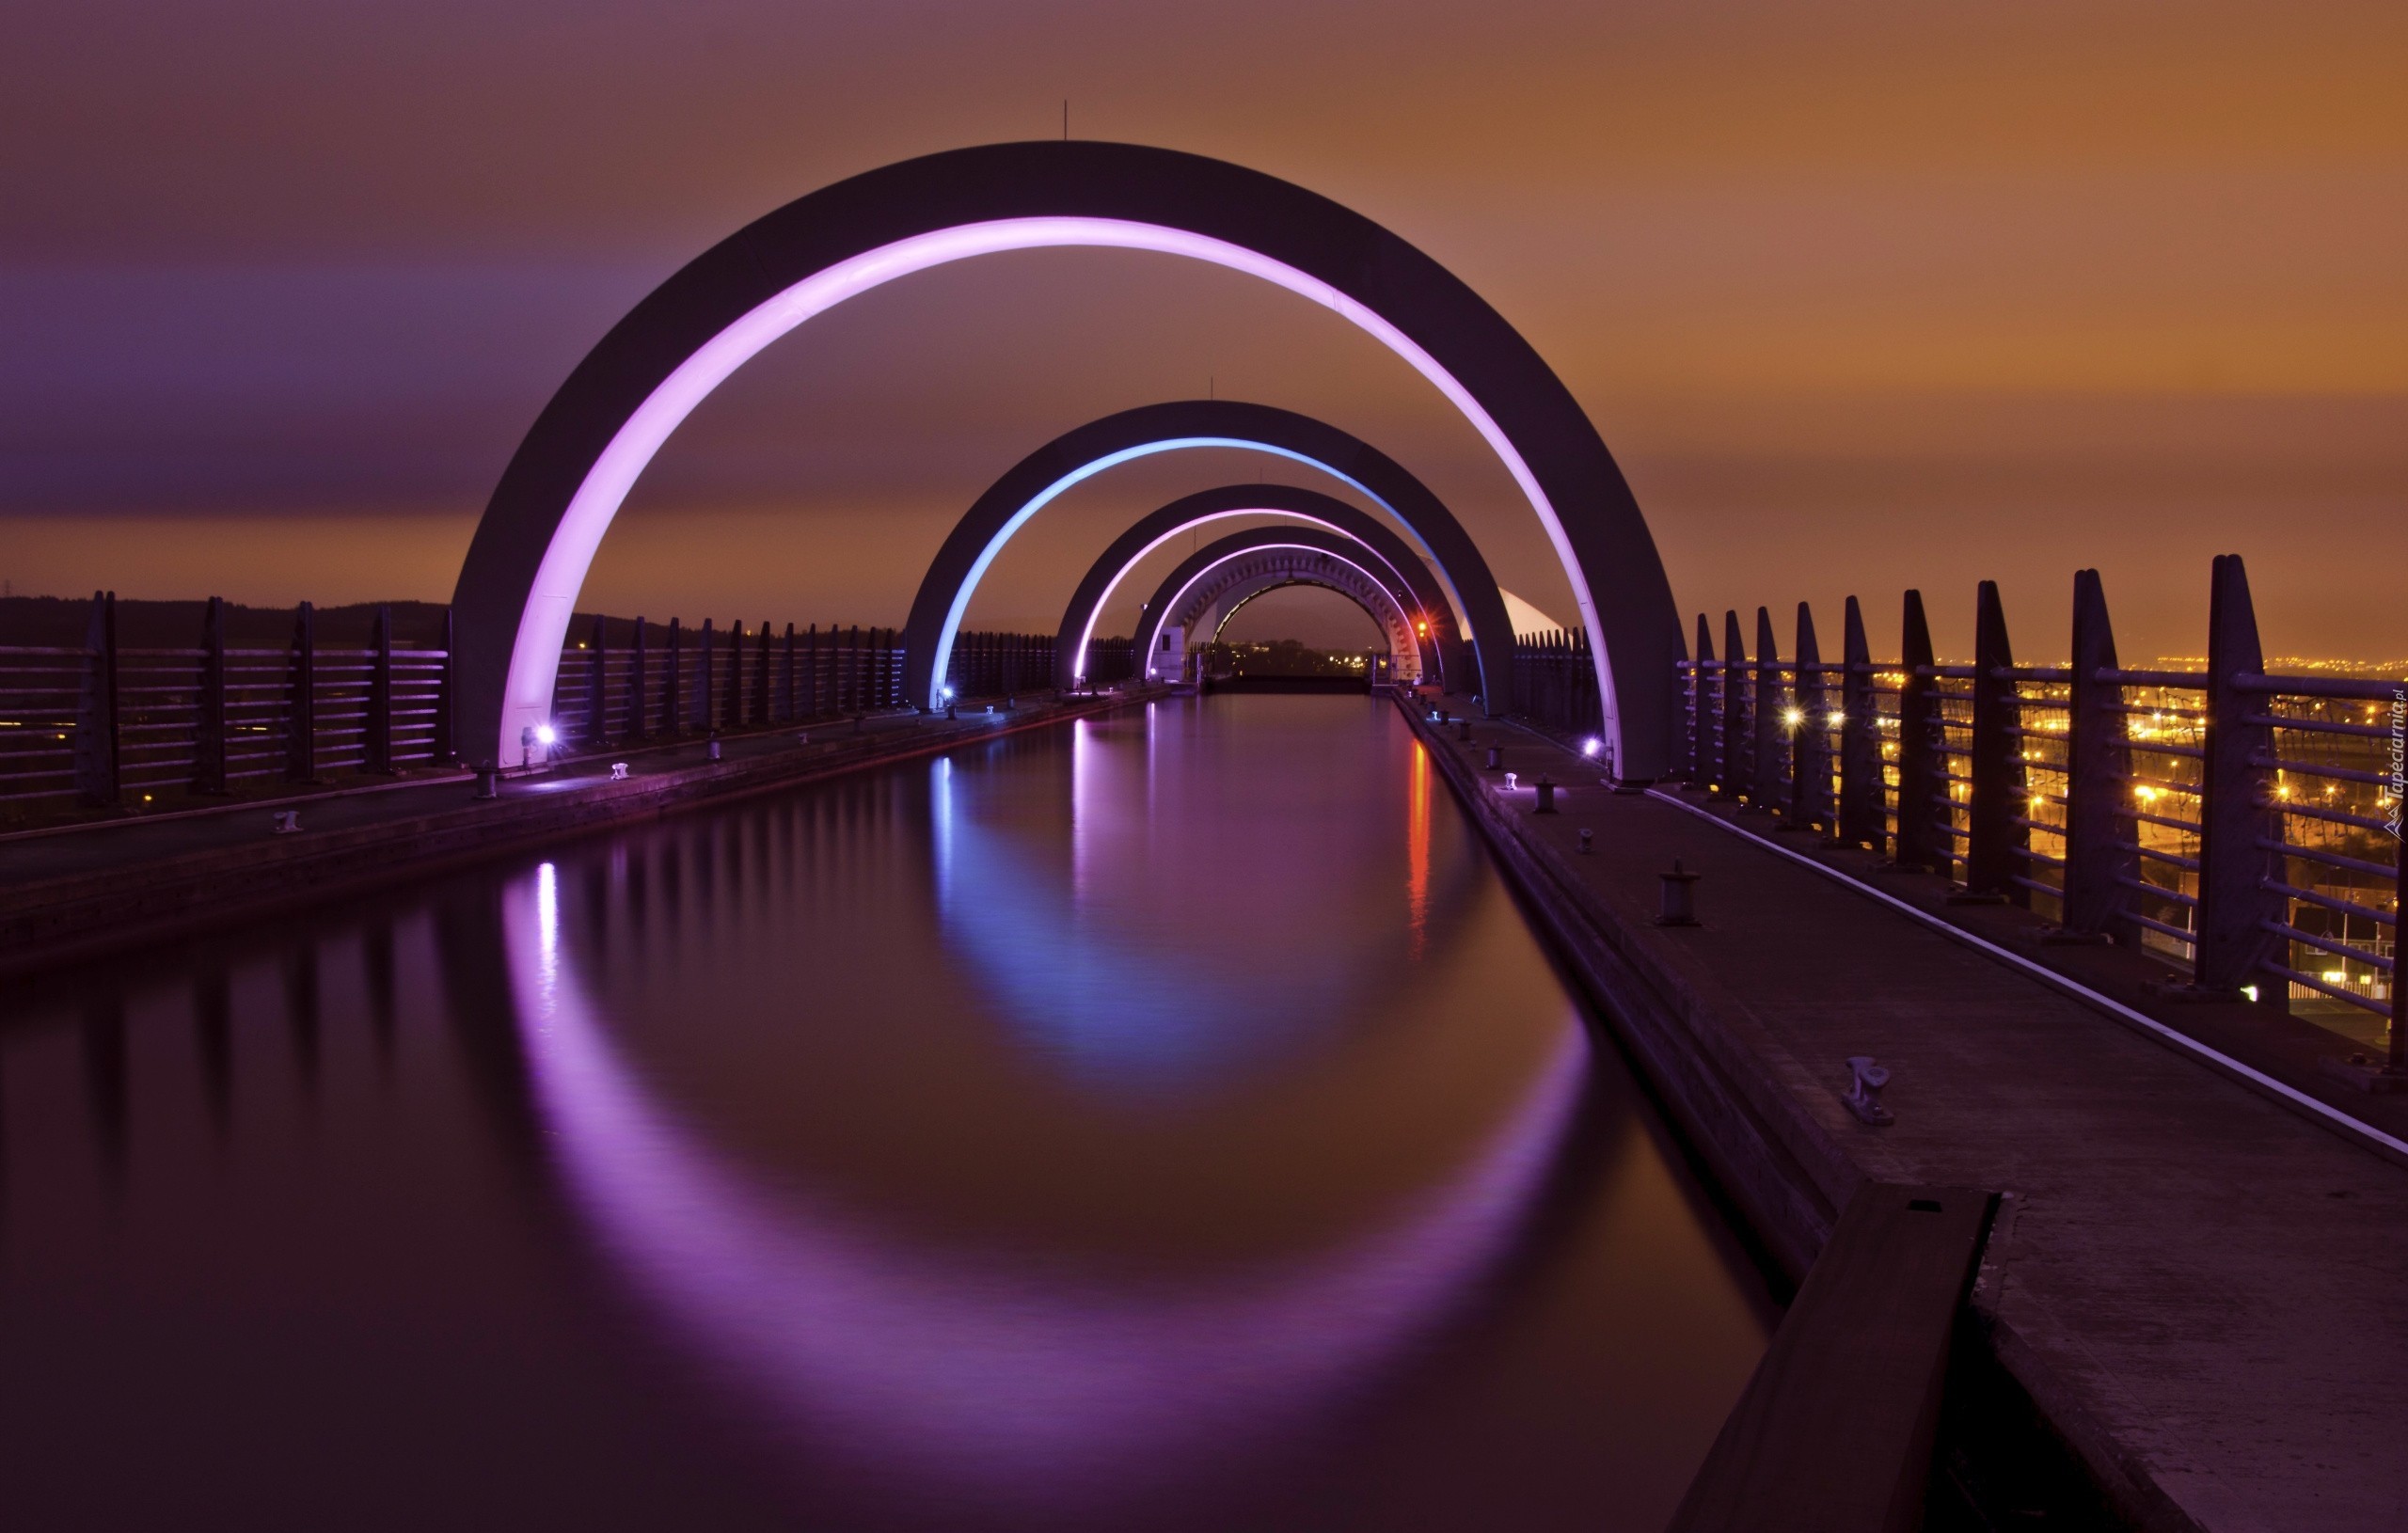 Фото обои экрана блокировки. Фолкеркское колесо в Шотландии. Фолкерк мост. Фалкирк Шотландия. Мост в Шотландии в городе Фолкере.